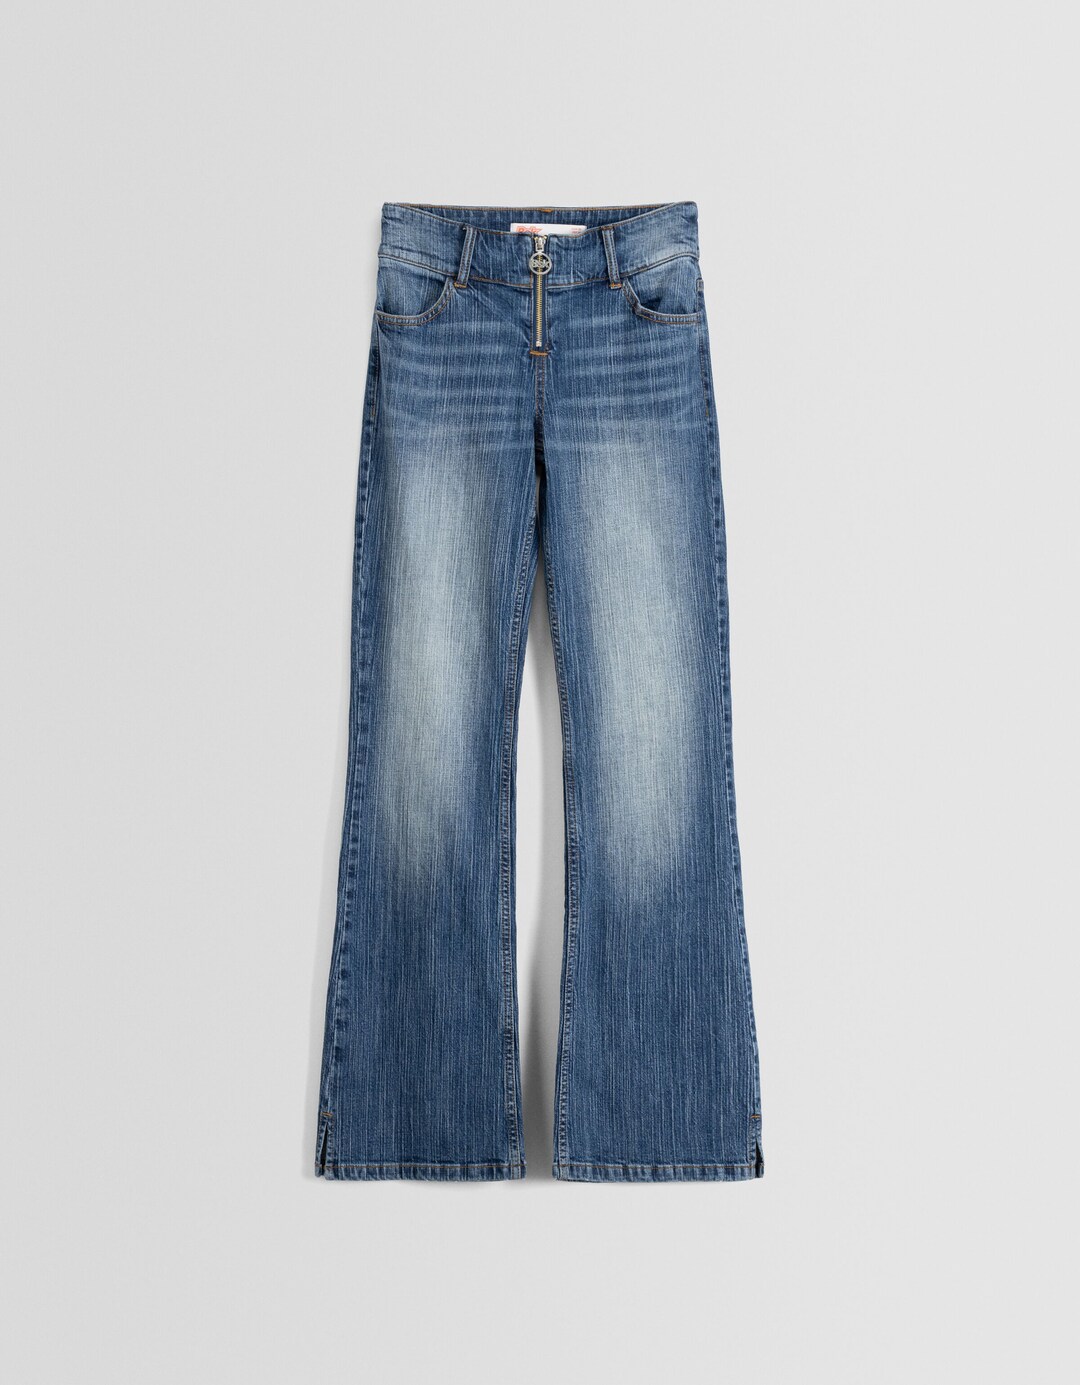 Jeans-Schlaghose mit tiefem Bund